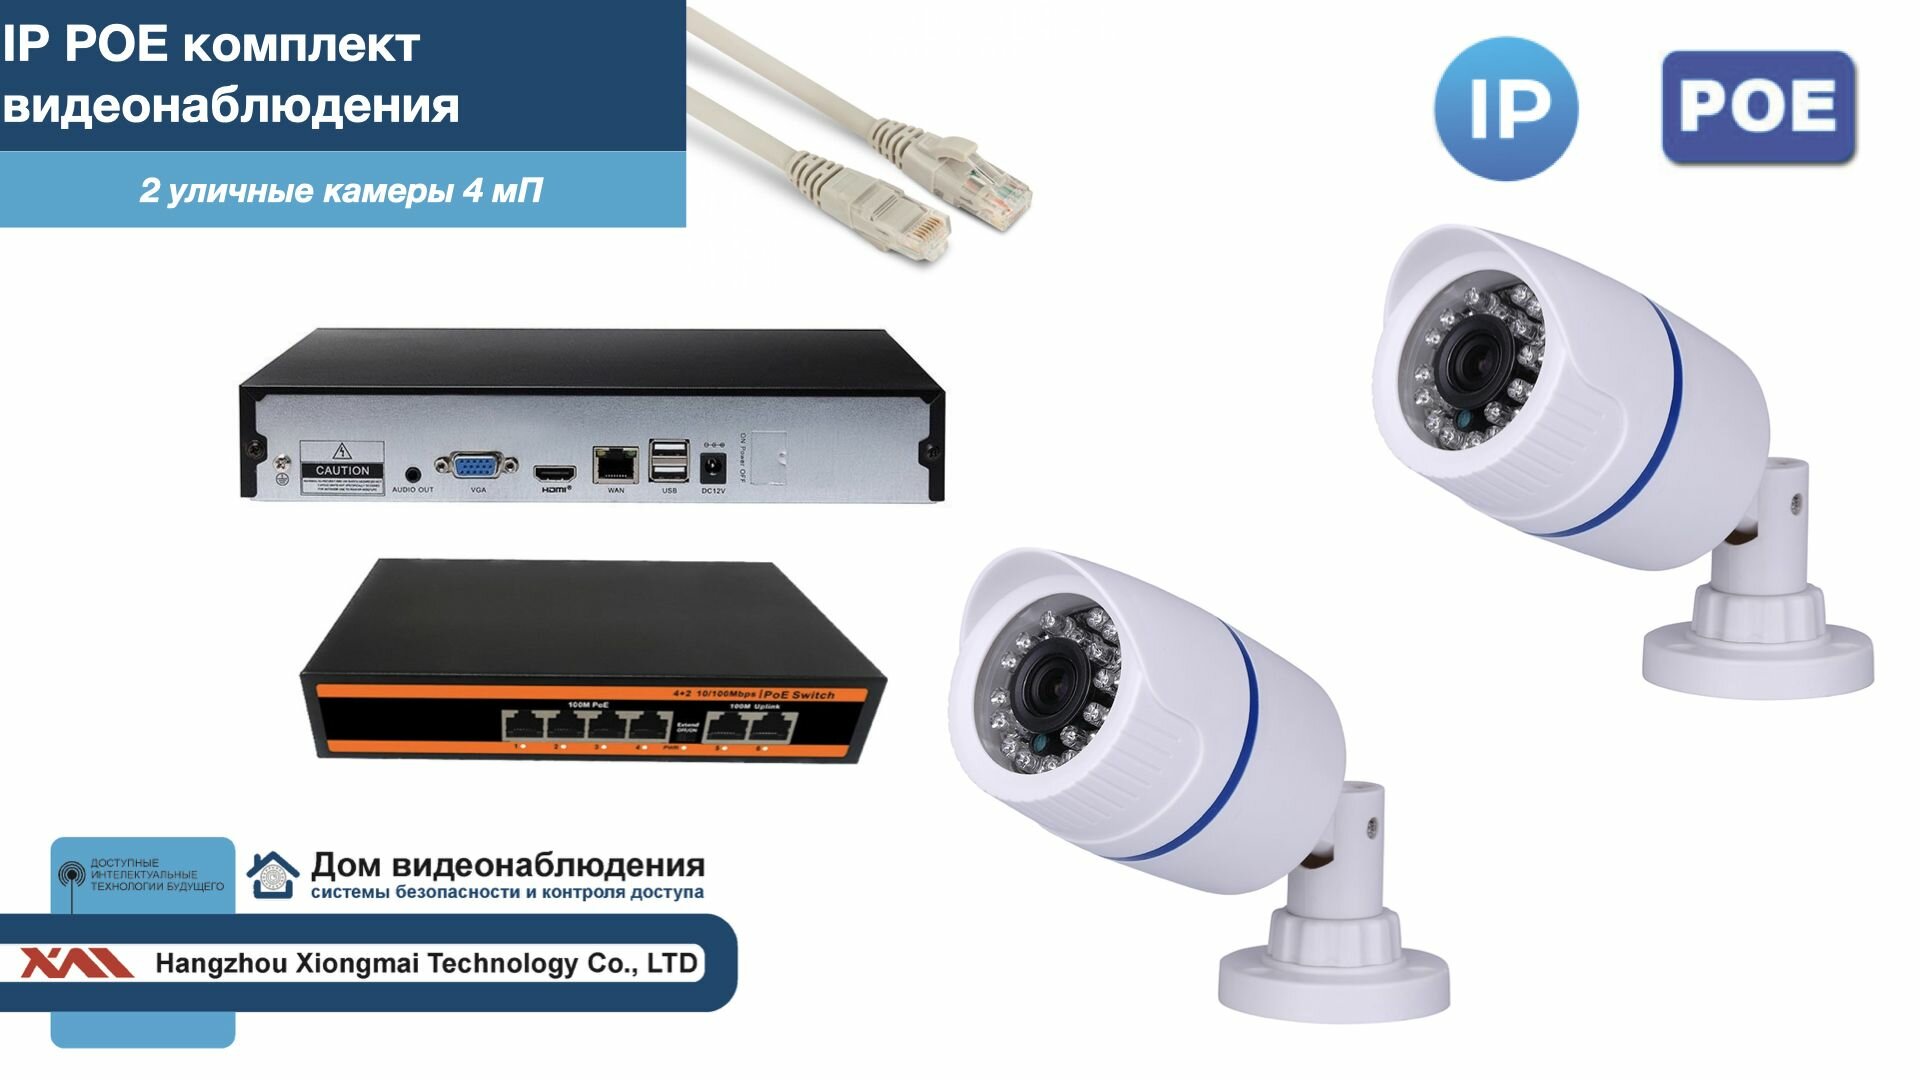 Полный IP POE комплект видеонаблюдения на 2 камеры (KIT2IPPOE100W4MP)